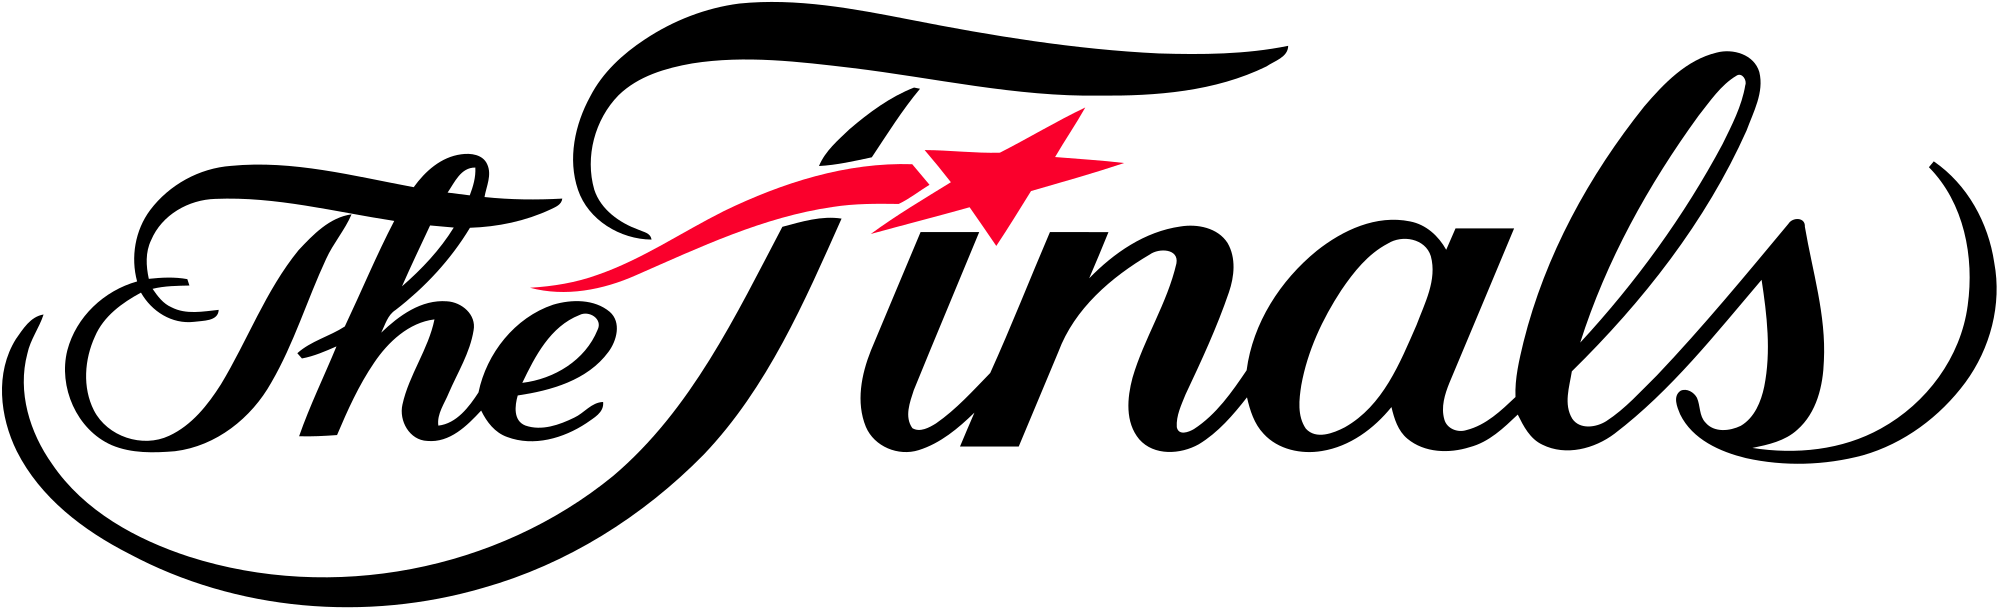 Open - Nba Finals Logo 2017 (2000x609)